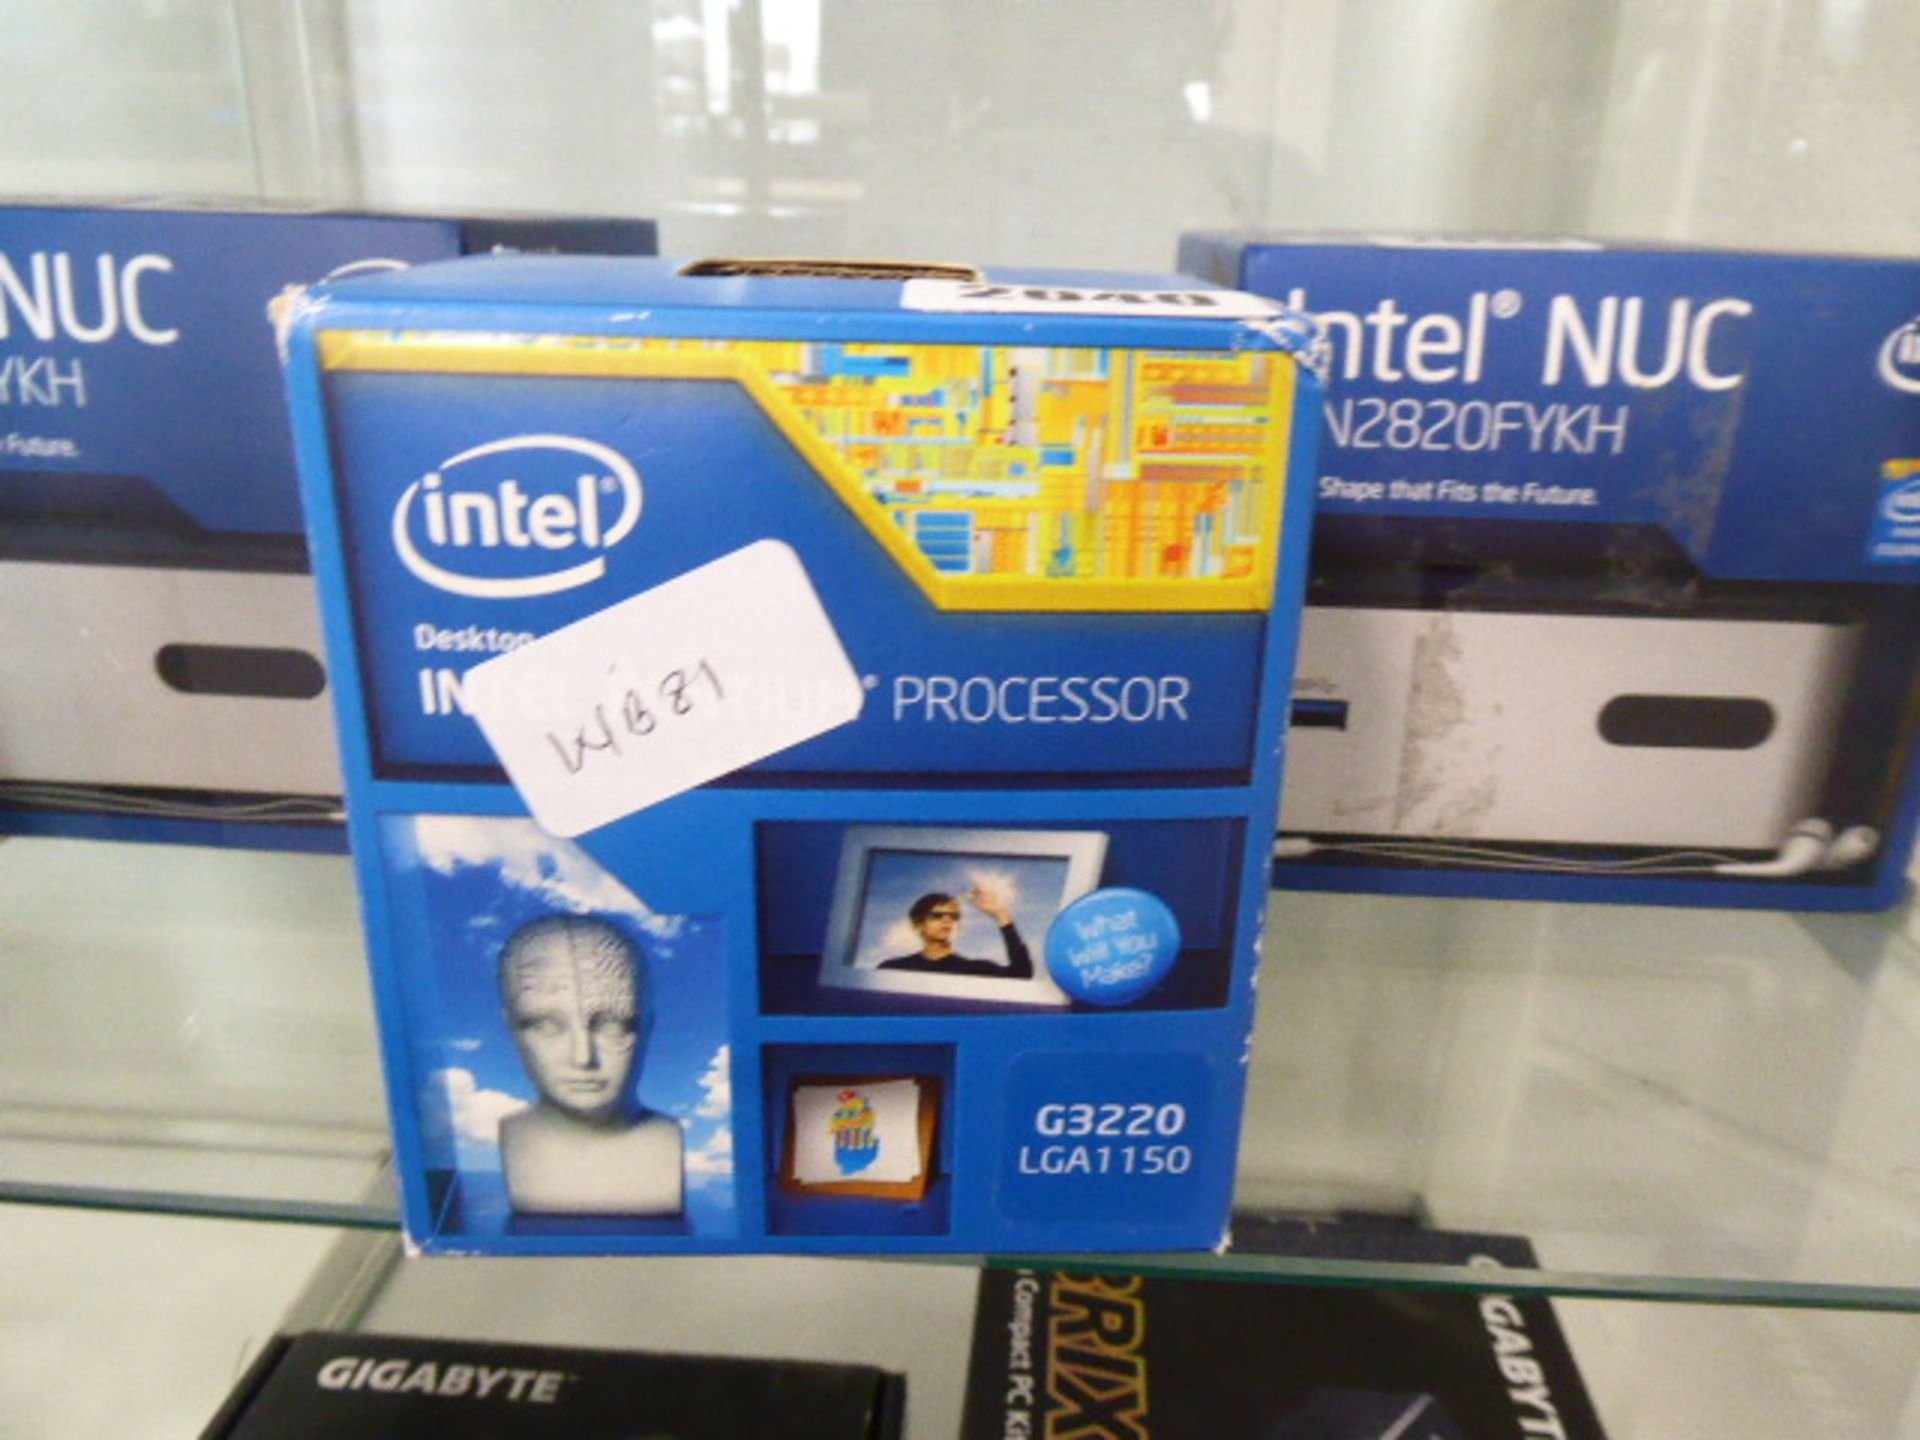 Intel Pentium G3220 processor in box